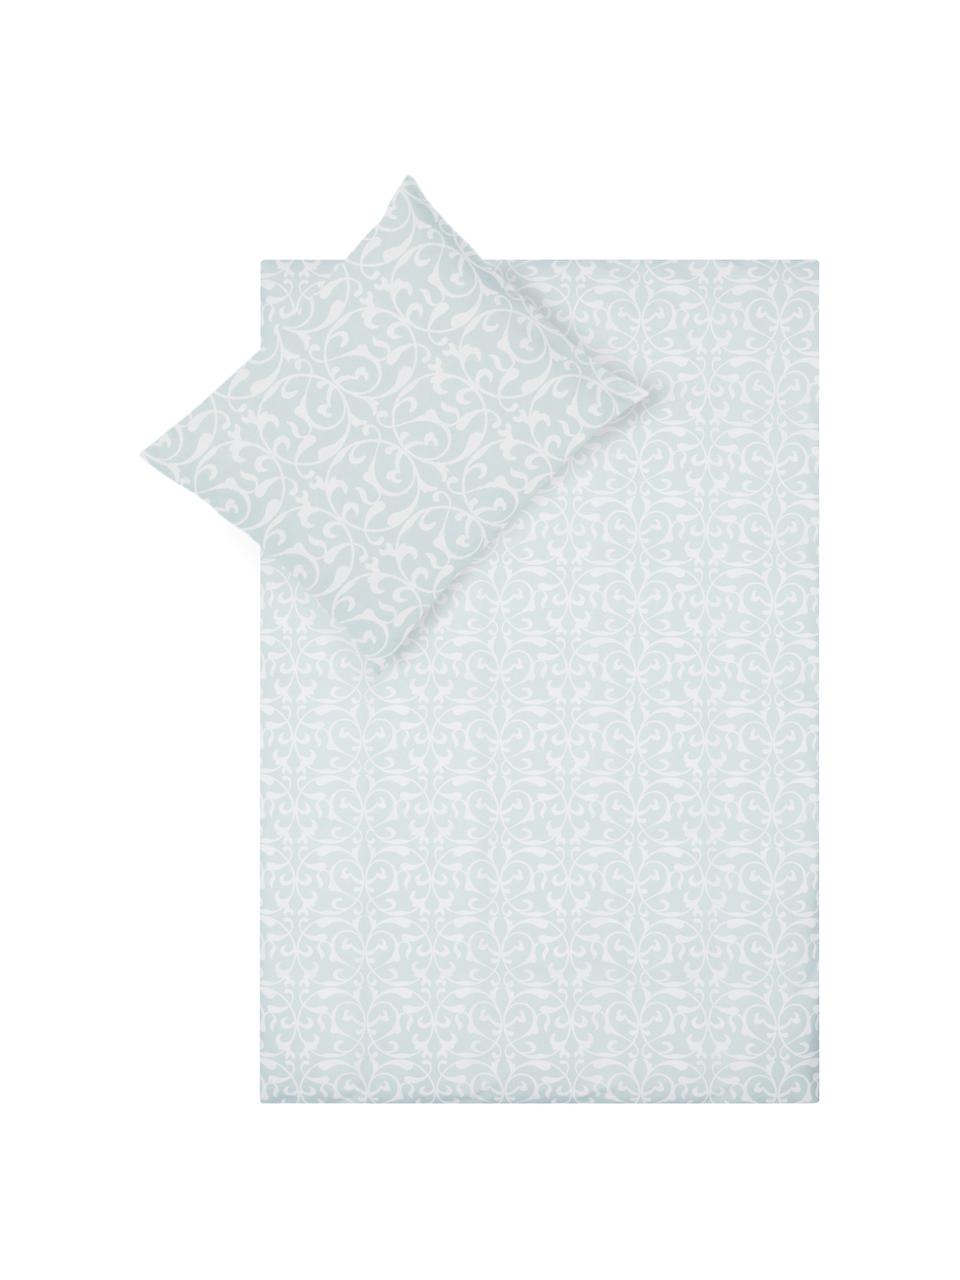 Dubbelzijdig dekbedovertrek Sola, Katoen, Bovenzijde: lichtblauw, wit. Onderzijde: wit, 140 x 200 cm